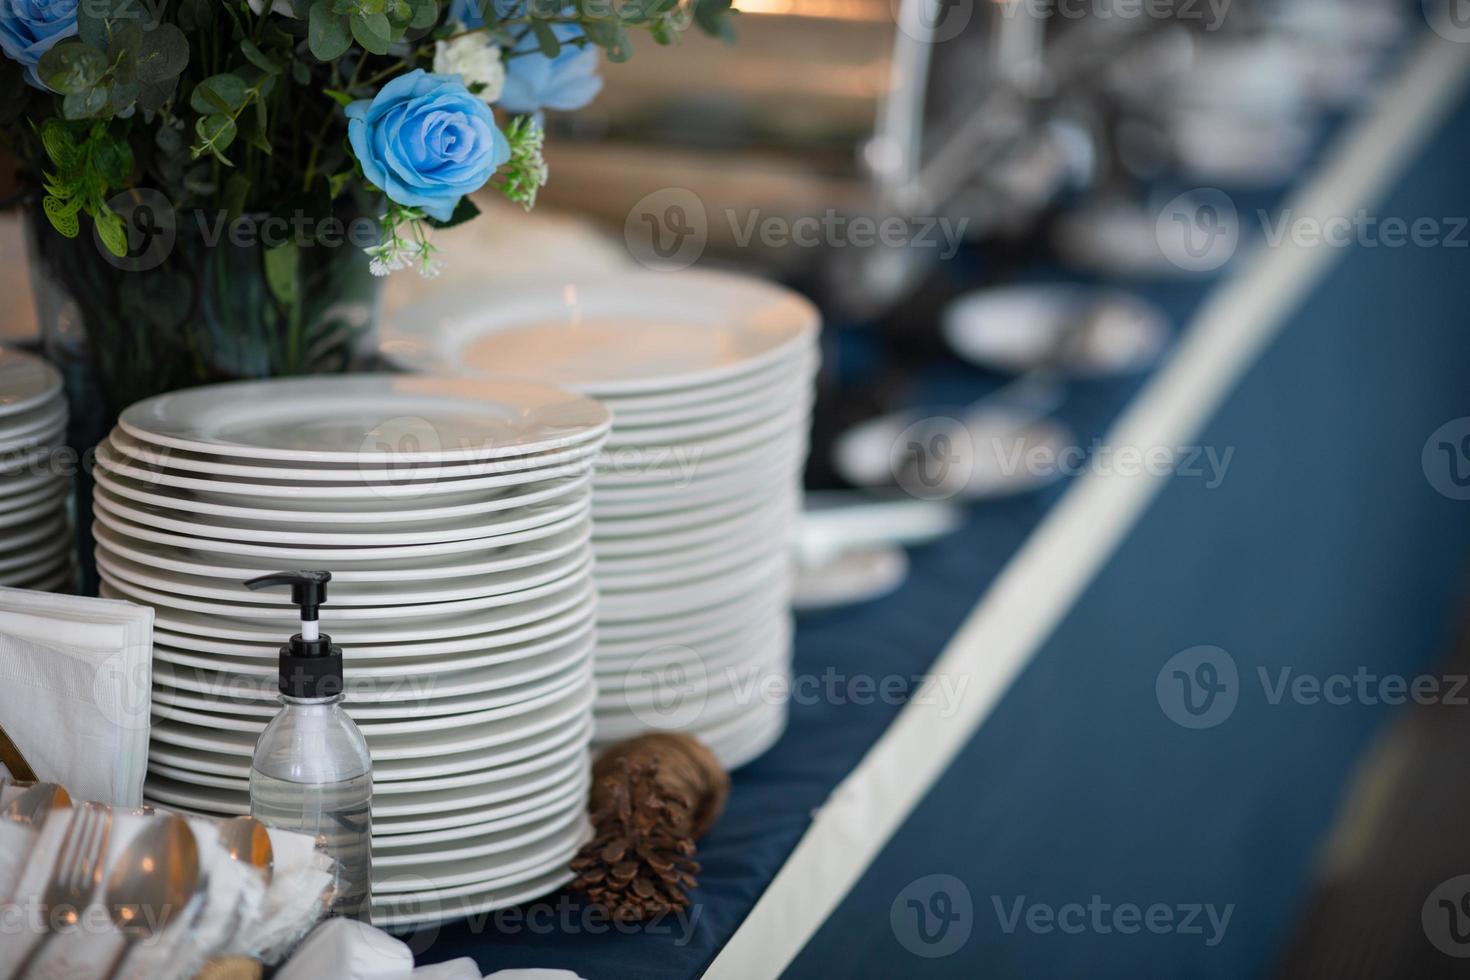 Buffetessen, Catering-Food-Party in einem Restaurant, Mini-Häppchen, Snacks und Vorspeisen foto